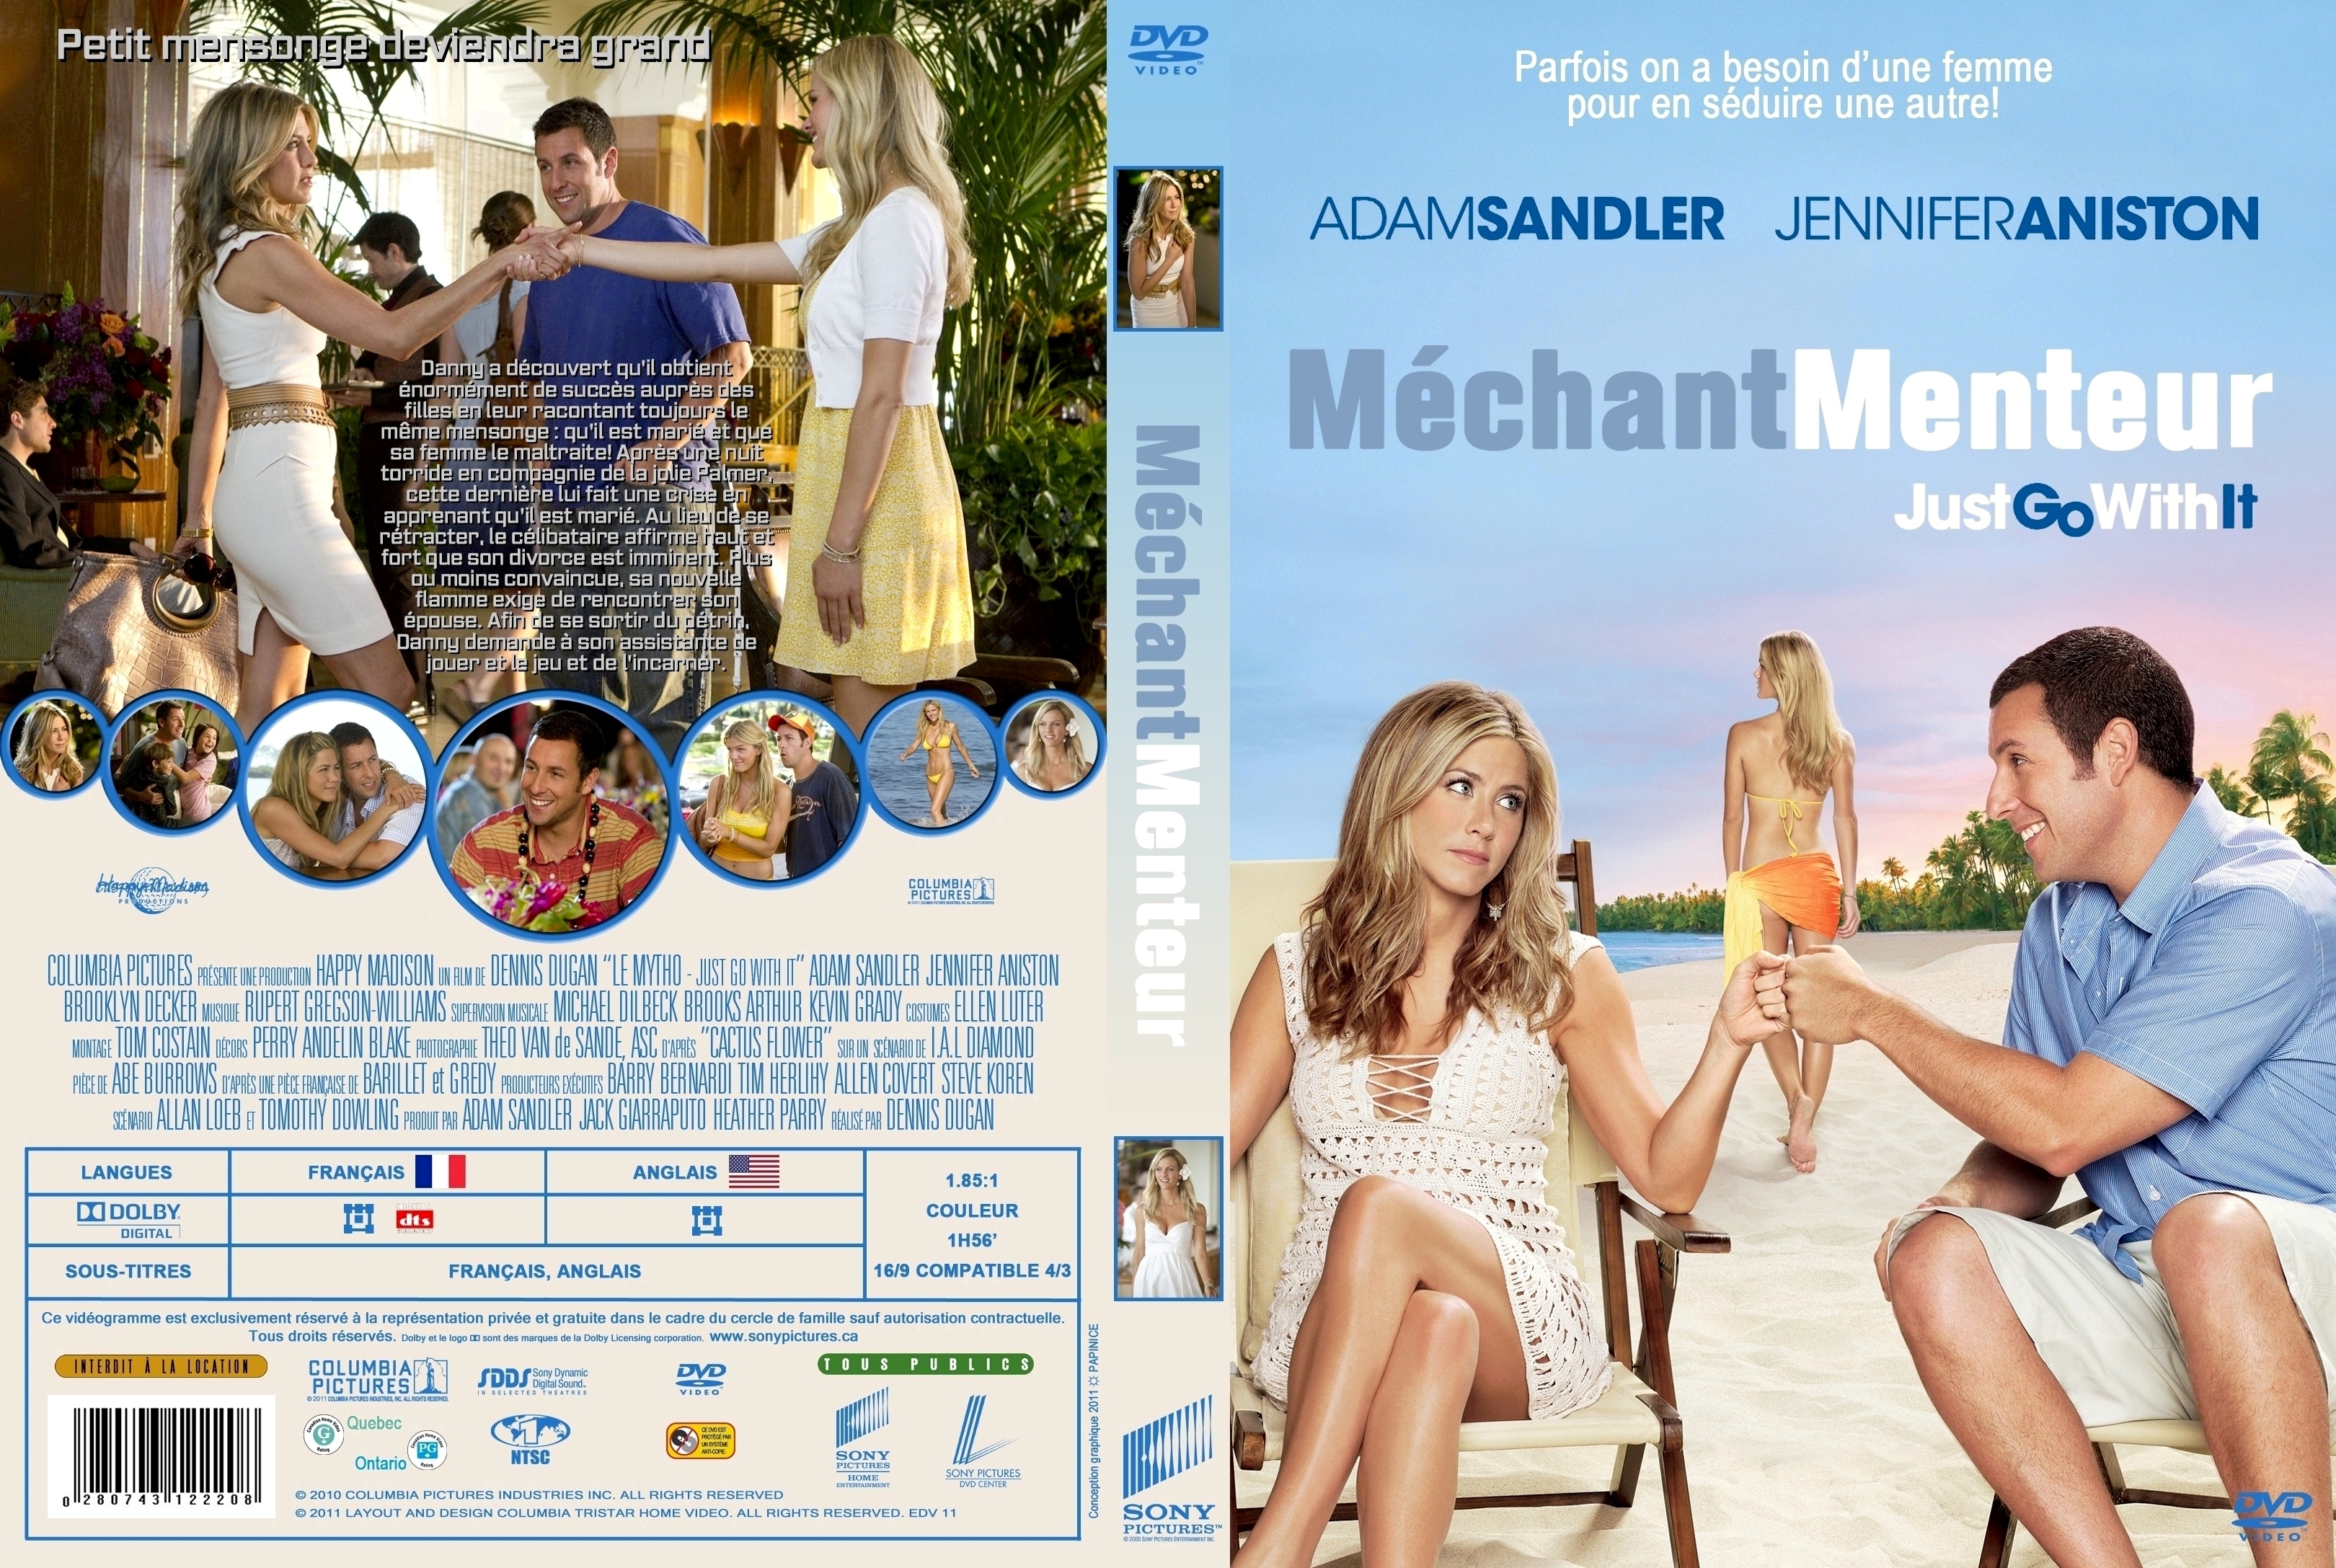 Jaquette DVD Mchant menteur - Just go whit it (Canadienne) custom